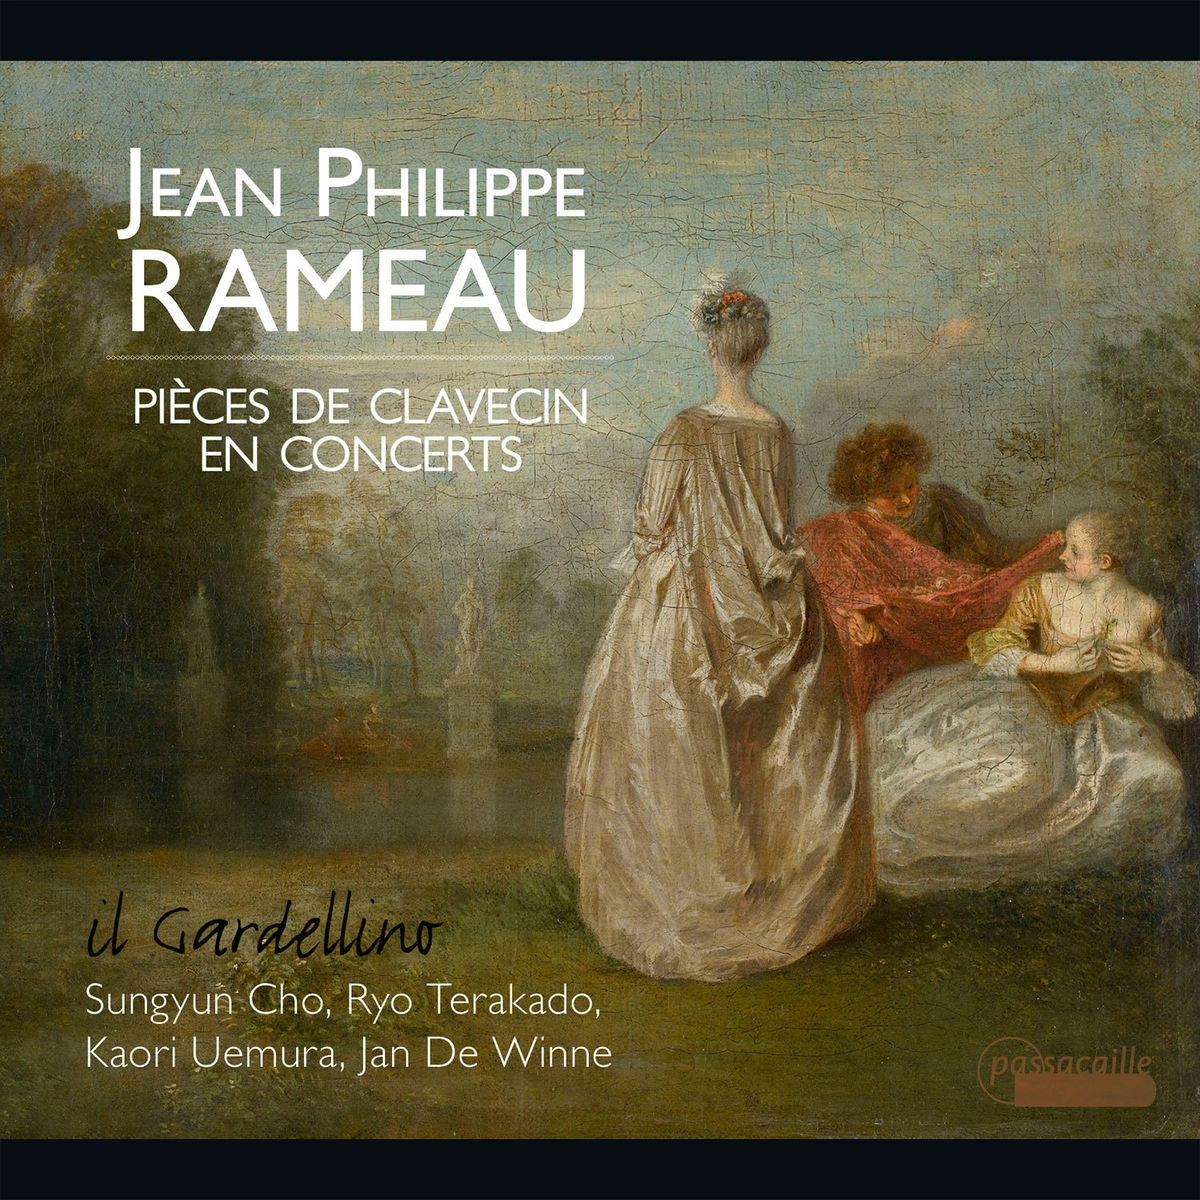 Il Gardellino - Rameau: Pieces de Clavecin en Concerts (2015) [Qobuz FLAC 24bit/48kHz]